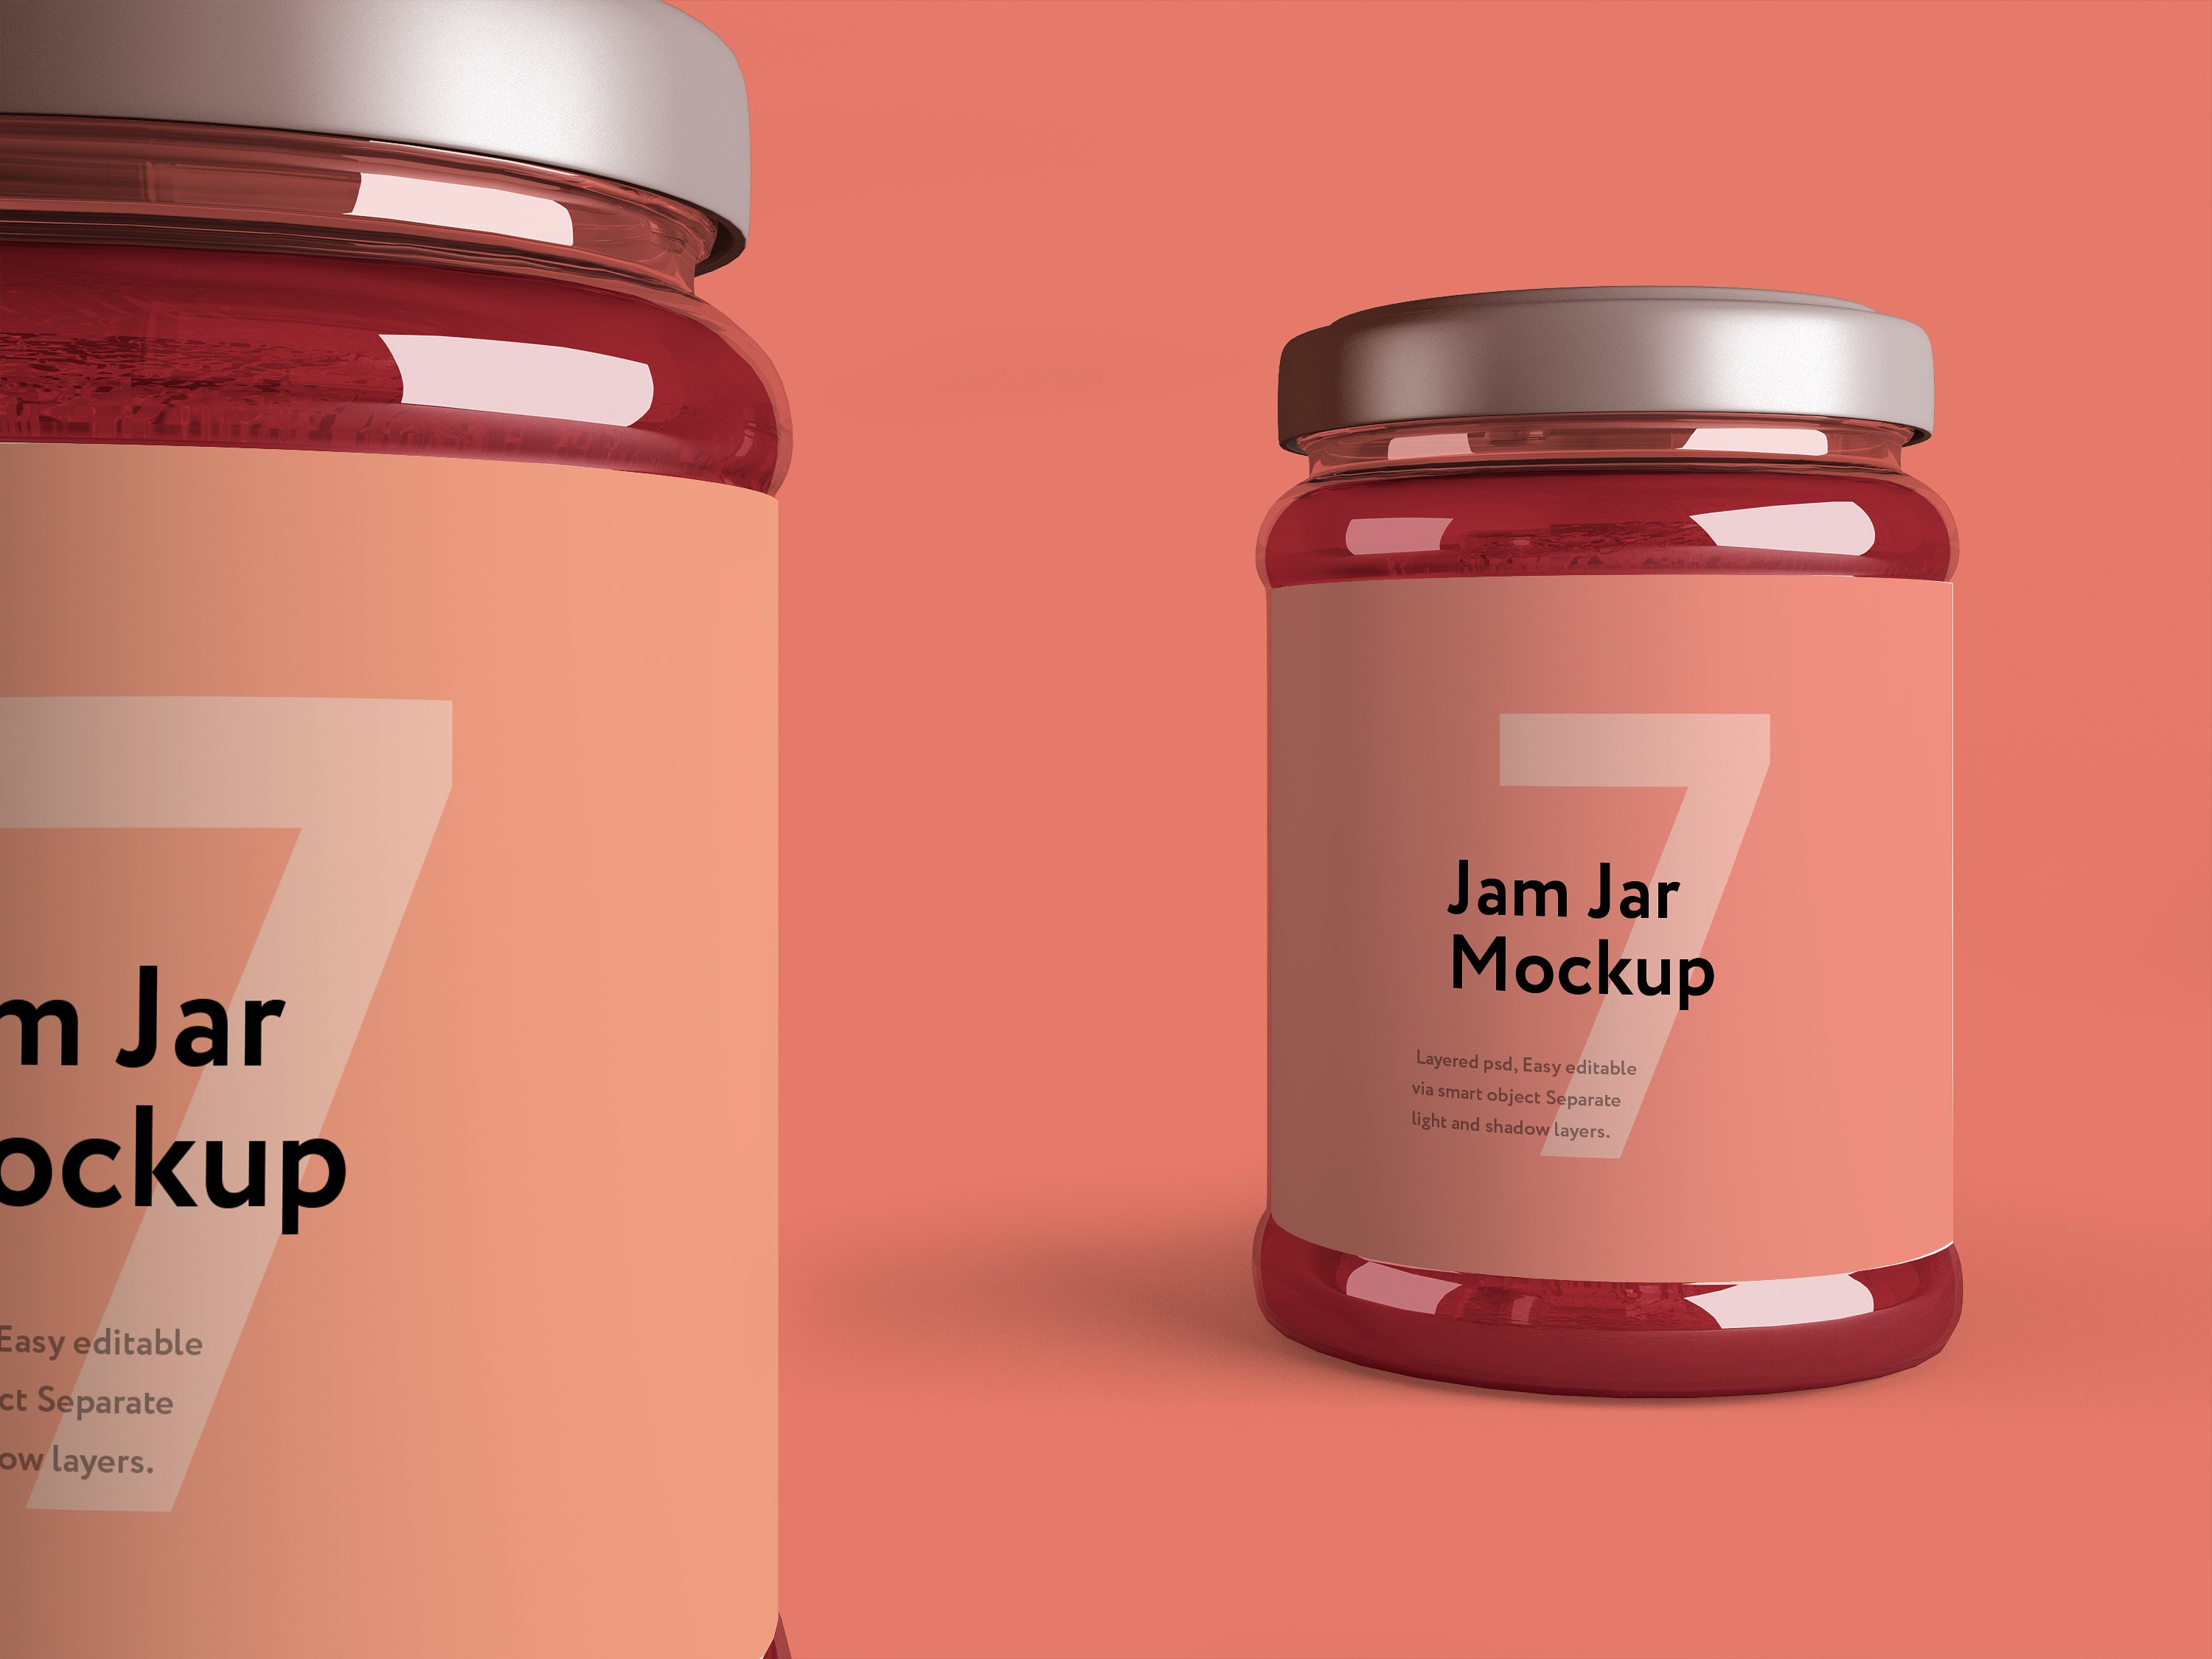 粉色果酱玻璃瓶外观设计效果图样机模板 Jam Jar Mockup插图4